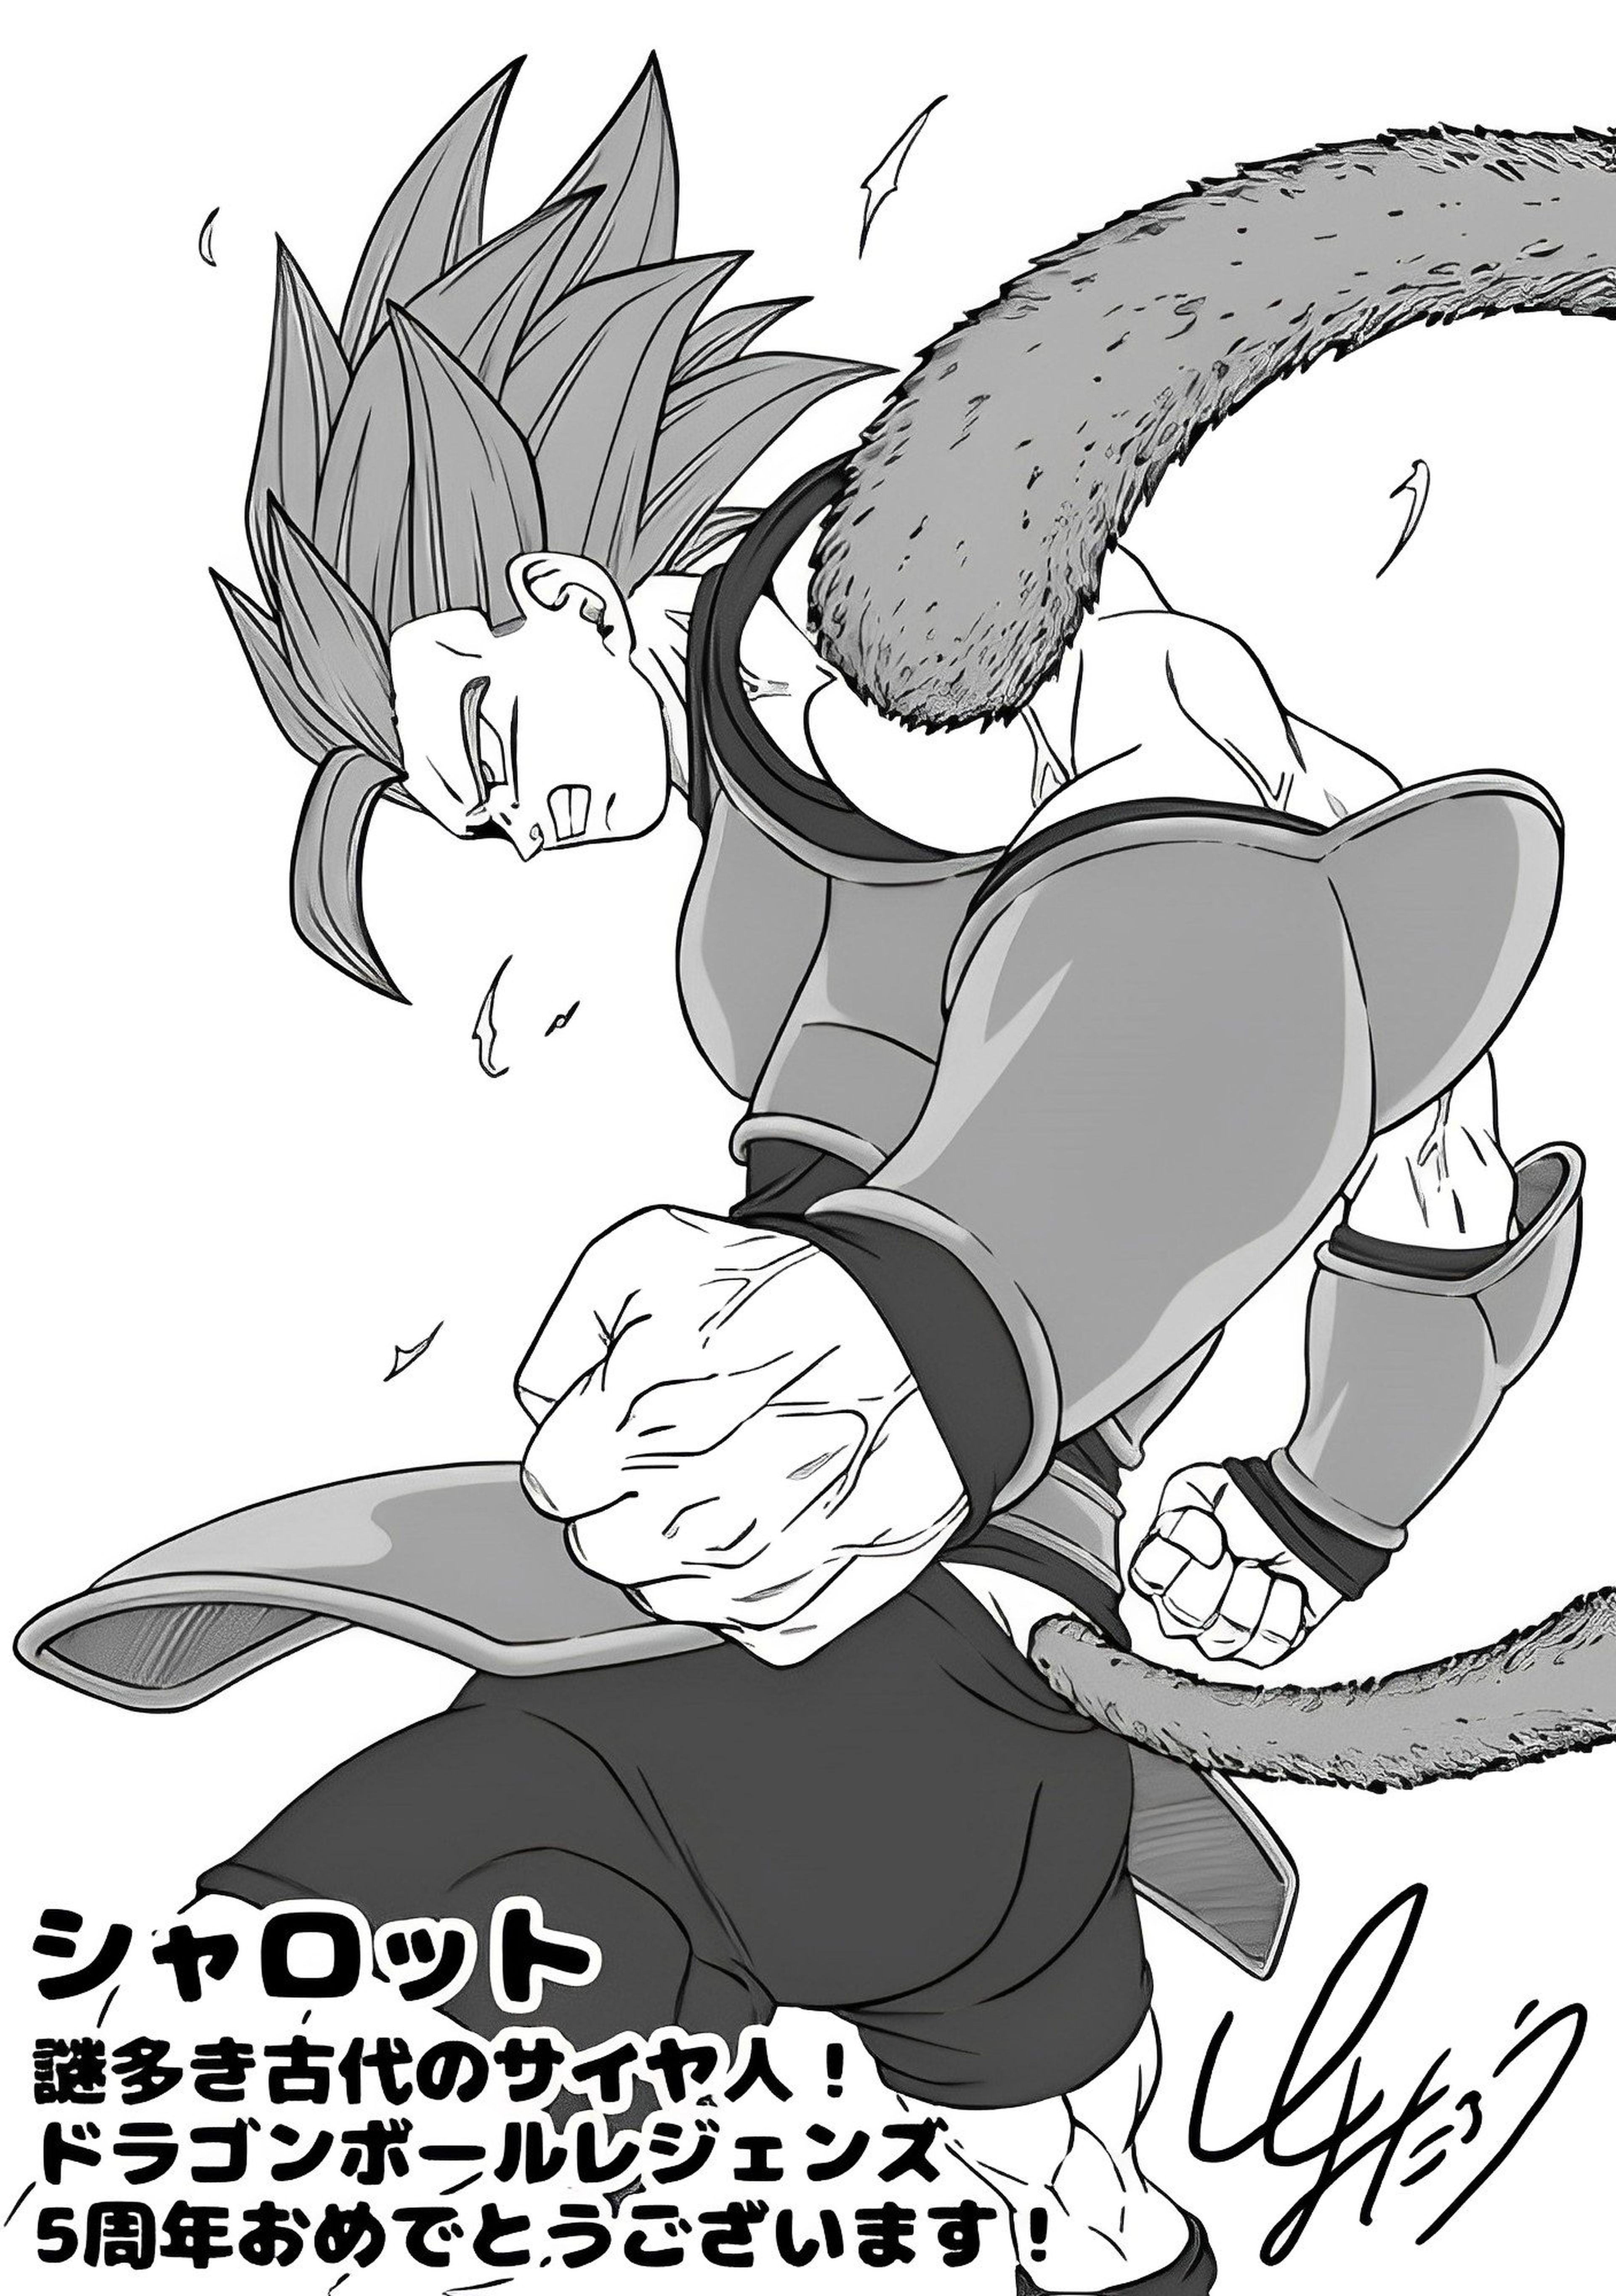 Toyotaro hace grande a Dragon Ball Legends con un dibujo épico de Shallot, el protagonista del juego